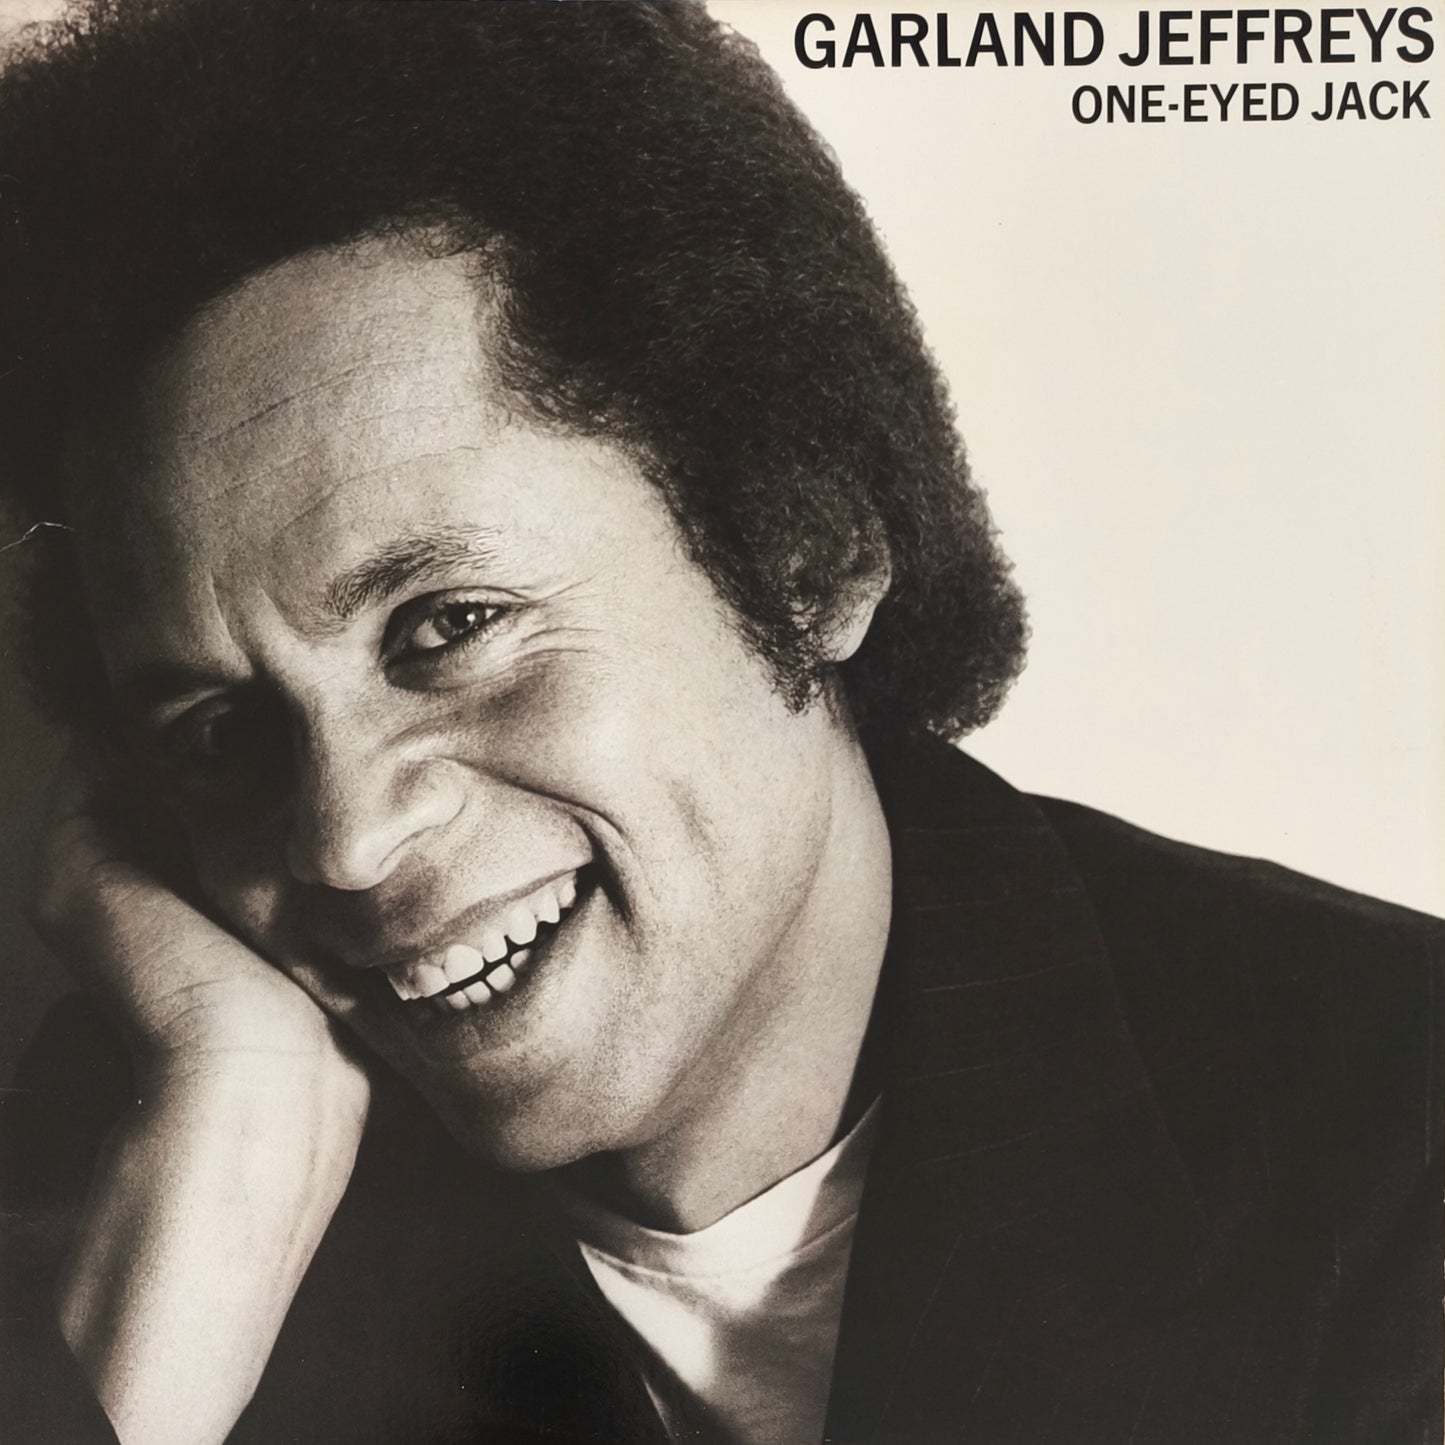 GARLAND JEFFREYS - One-Eyed Jack